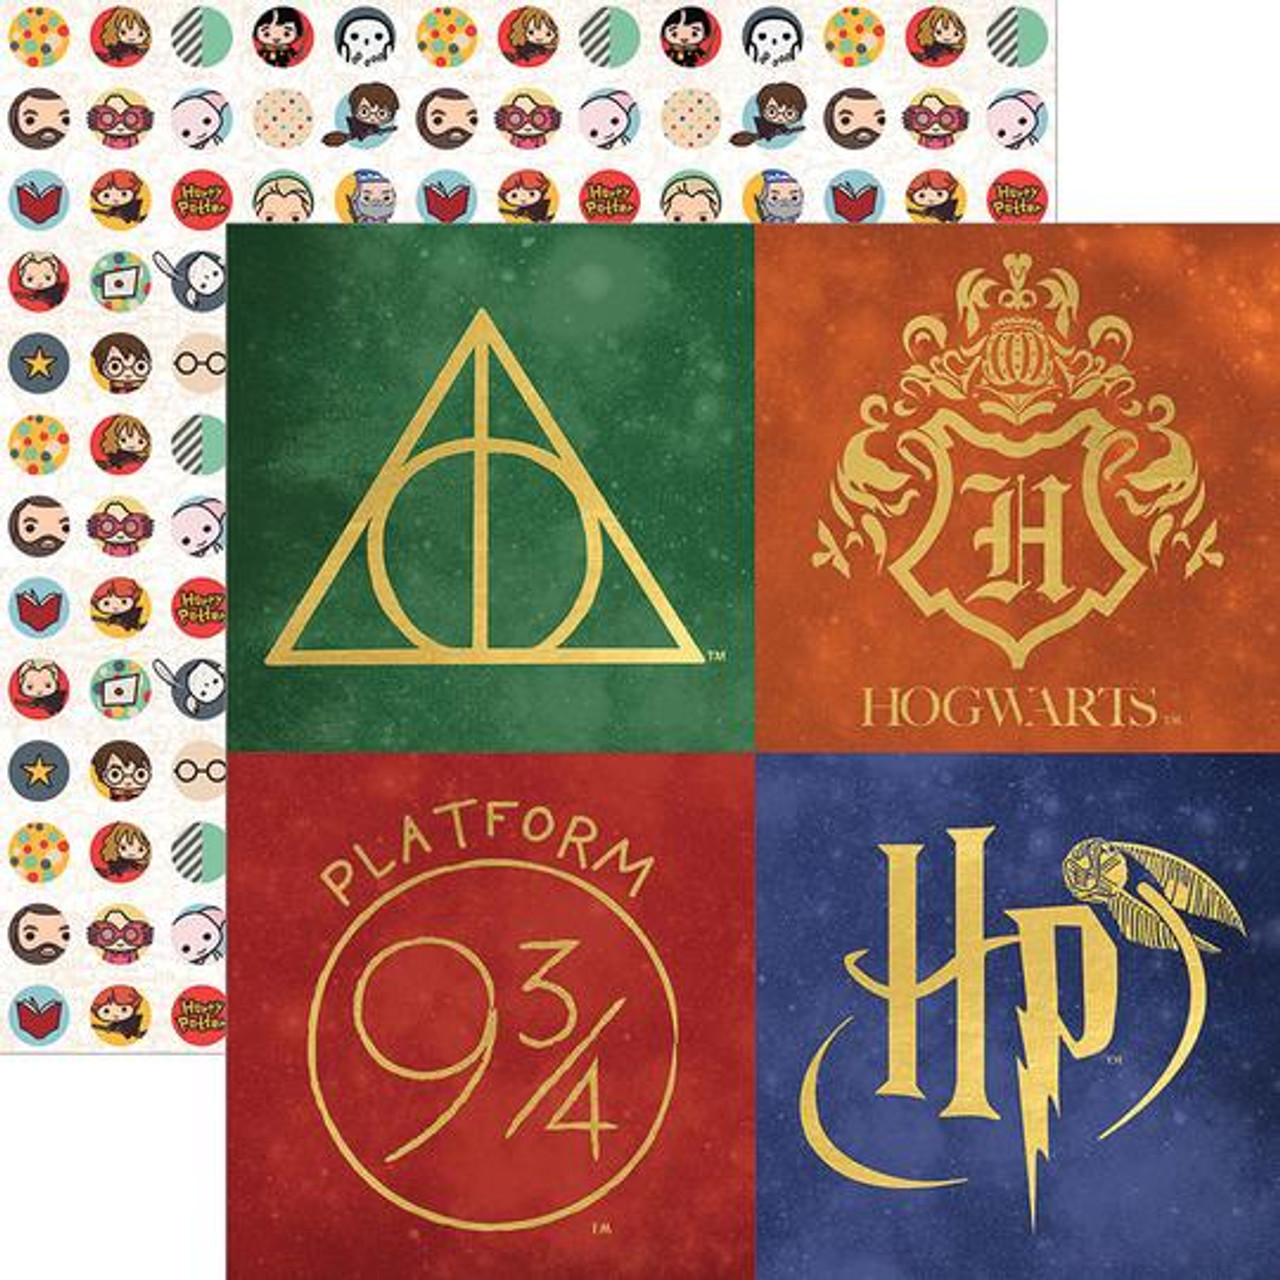 Scrapbook Stickers - Harry Potter